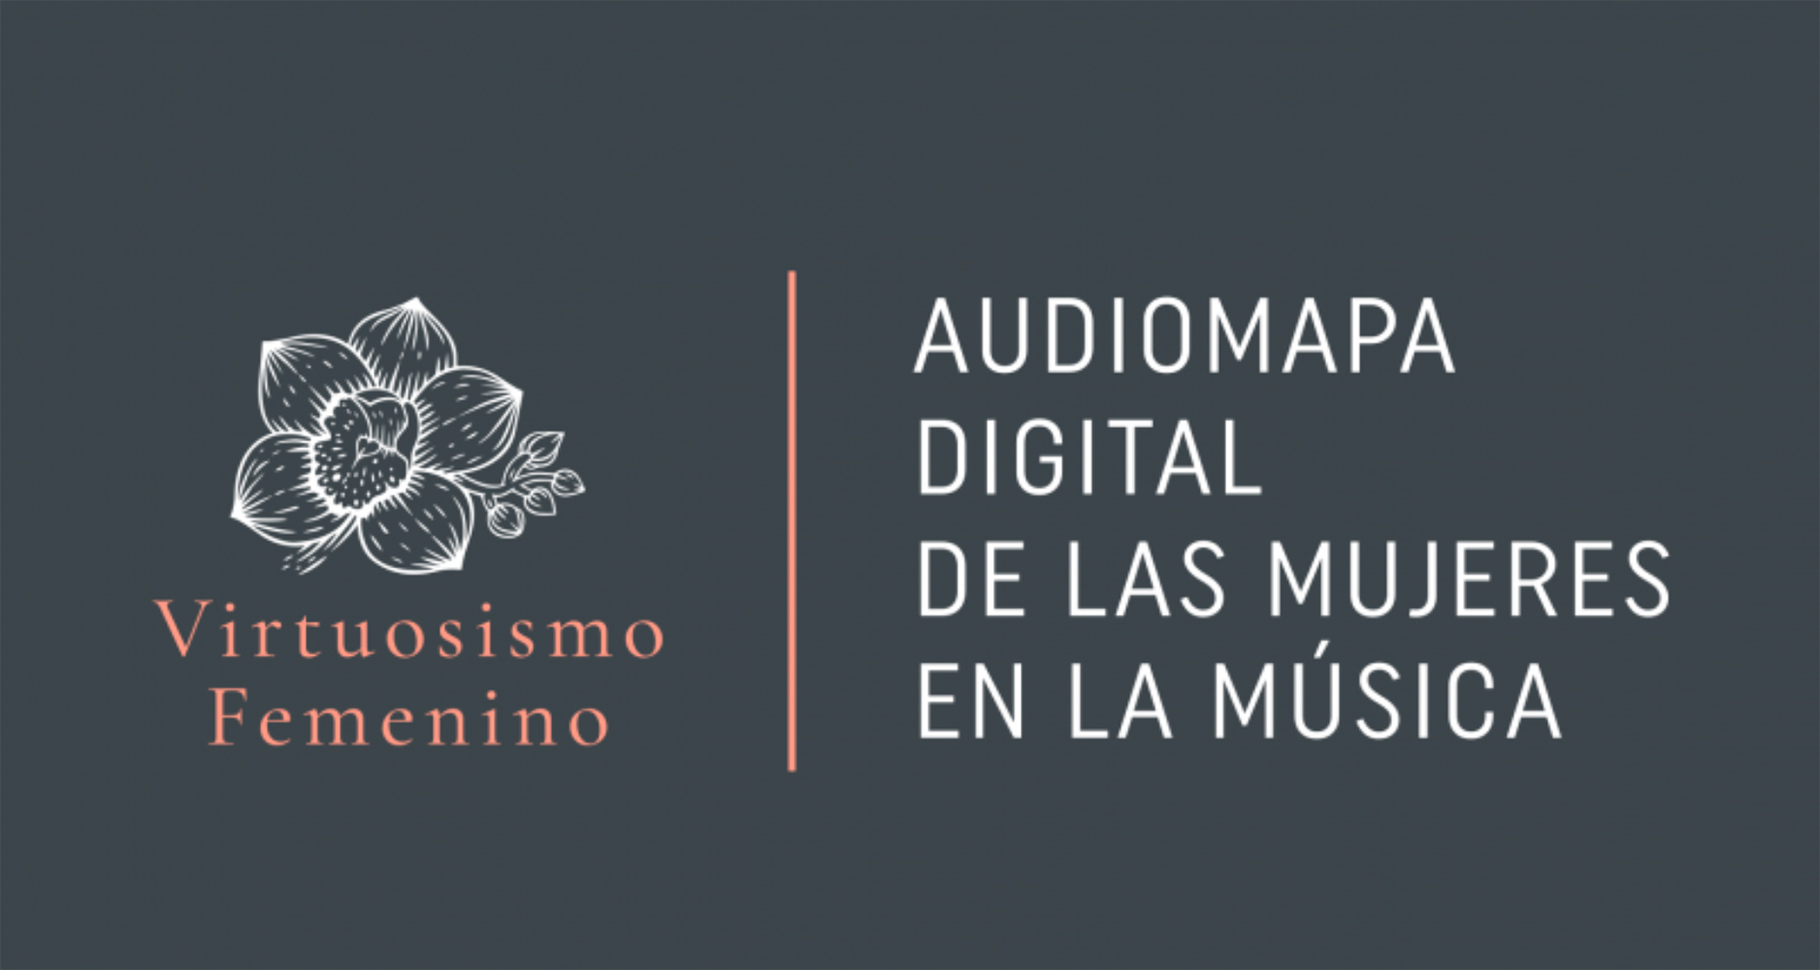 Audiomapa digital de las mujeres en la música